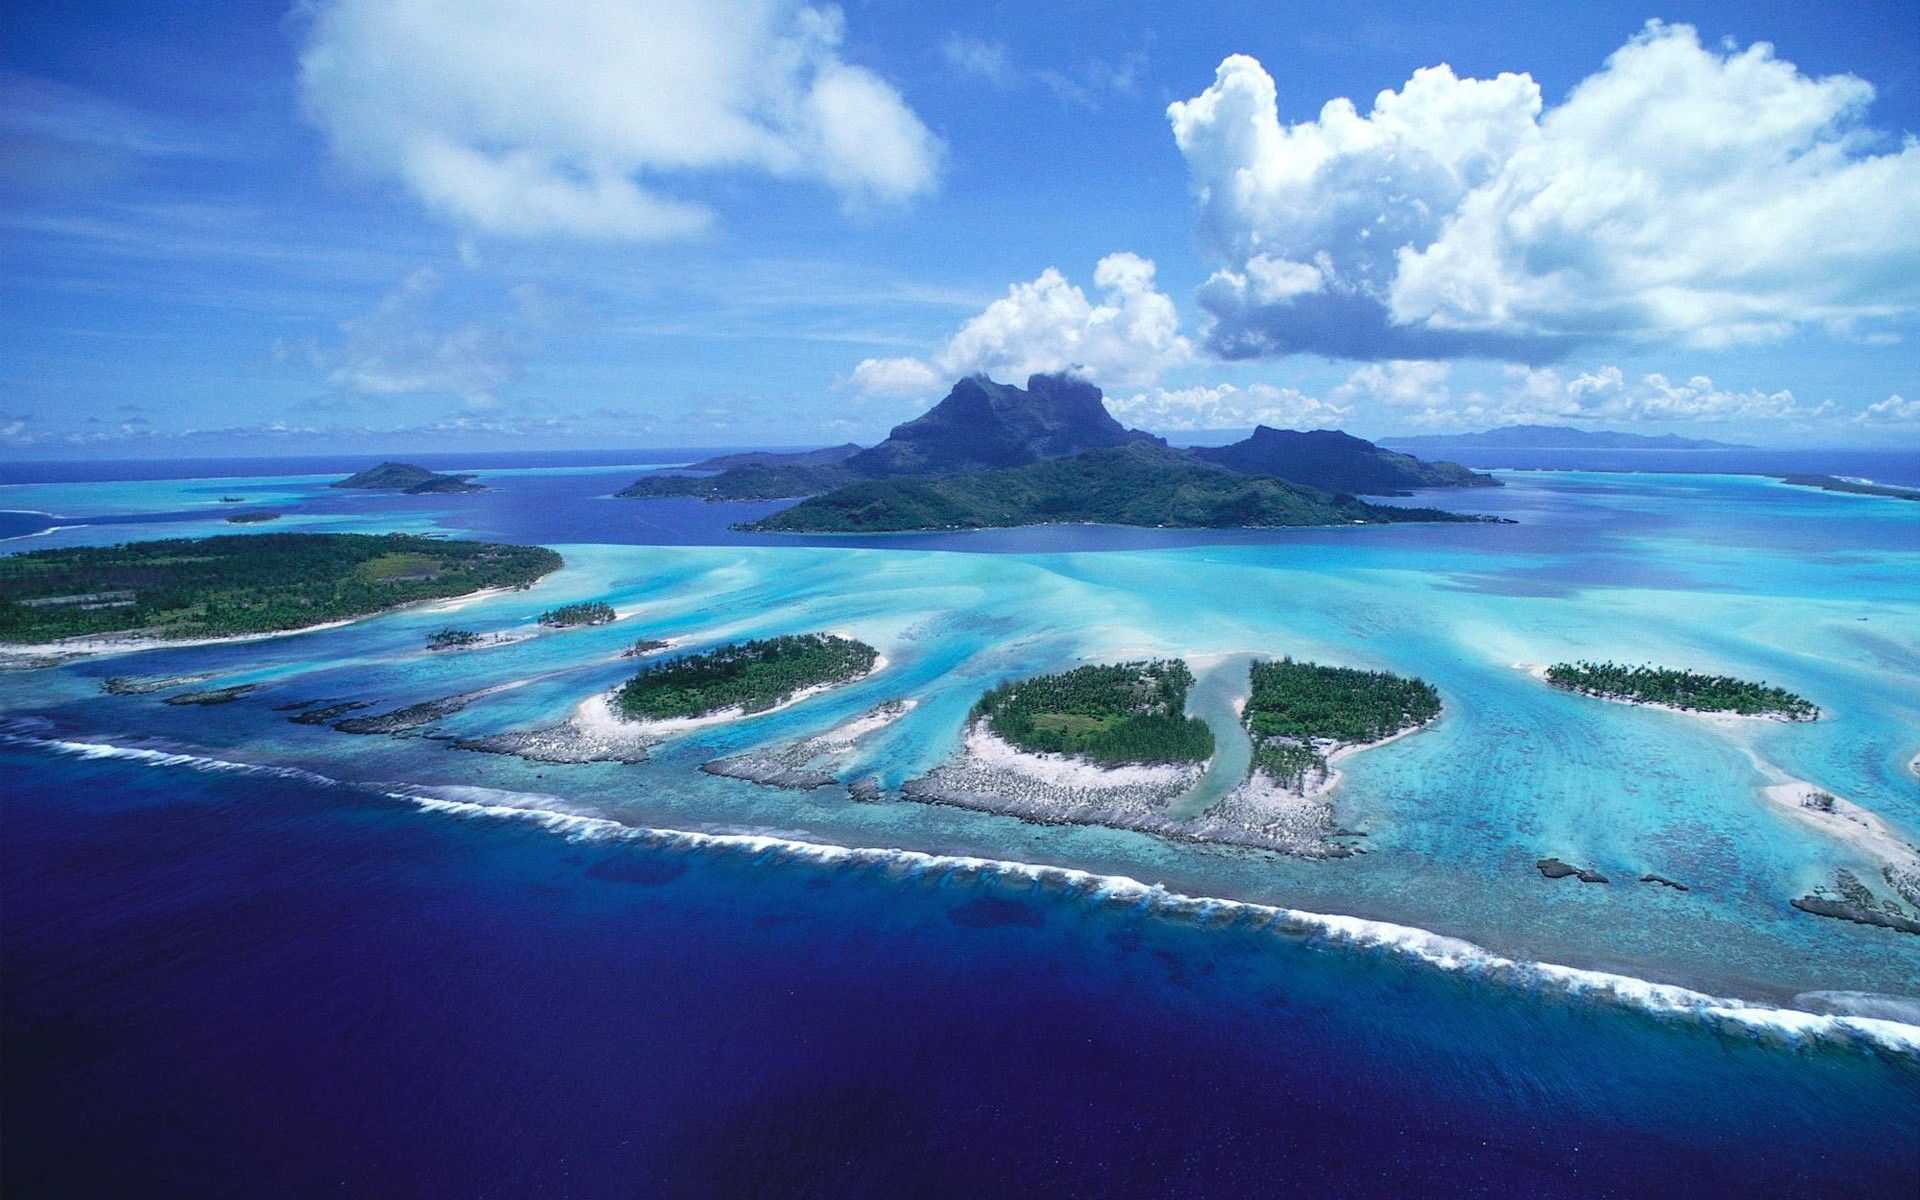 Free download Bora Bora Beautiful Island in French Polynesia HD